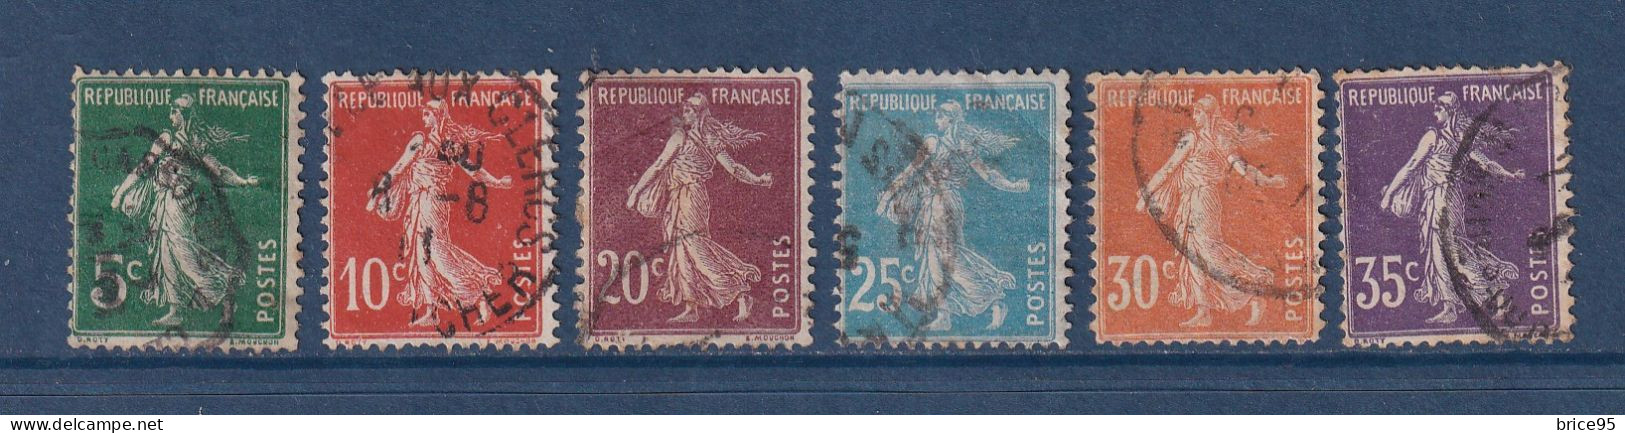 France - YT N° 137 à 142 - Oblitéré - 1907 - Usados